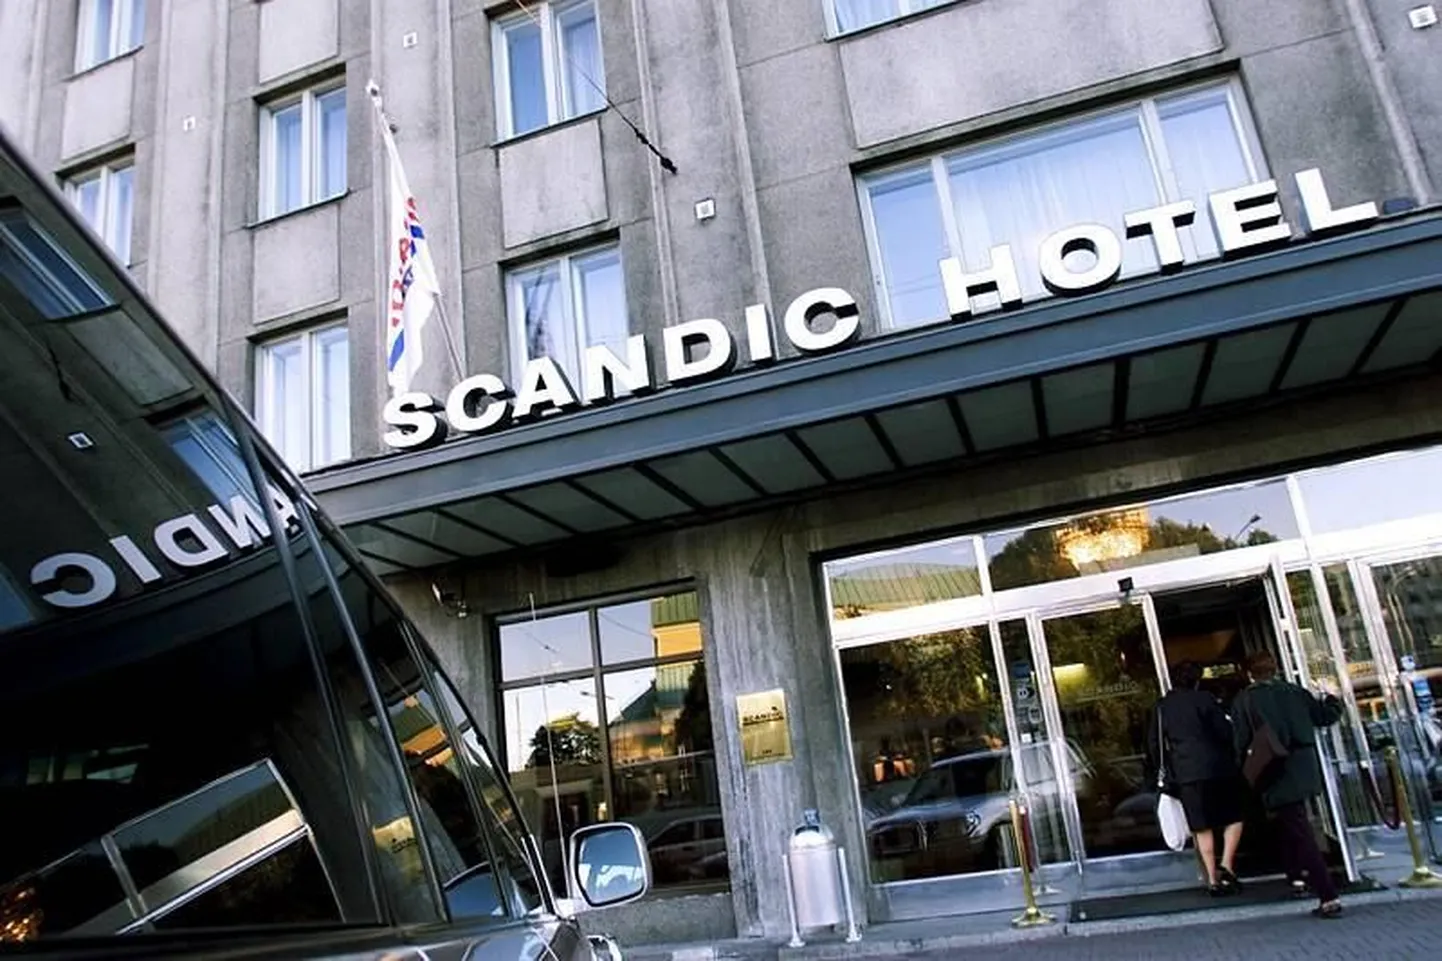 Scandic hotellid pakuvad edaspidi oma restoranides ja konverentsisaalides joogiks kohapeal pudelisse villitud kraanivett. Pildil hotell Scandic Palace Tallinnas.